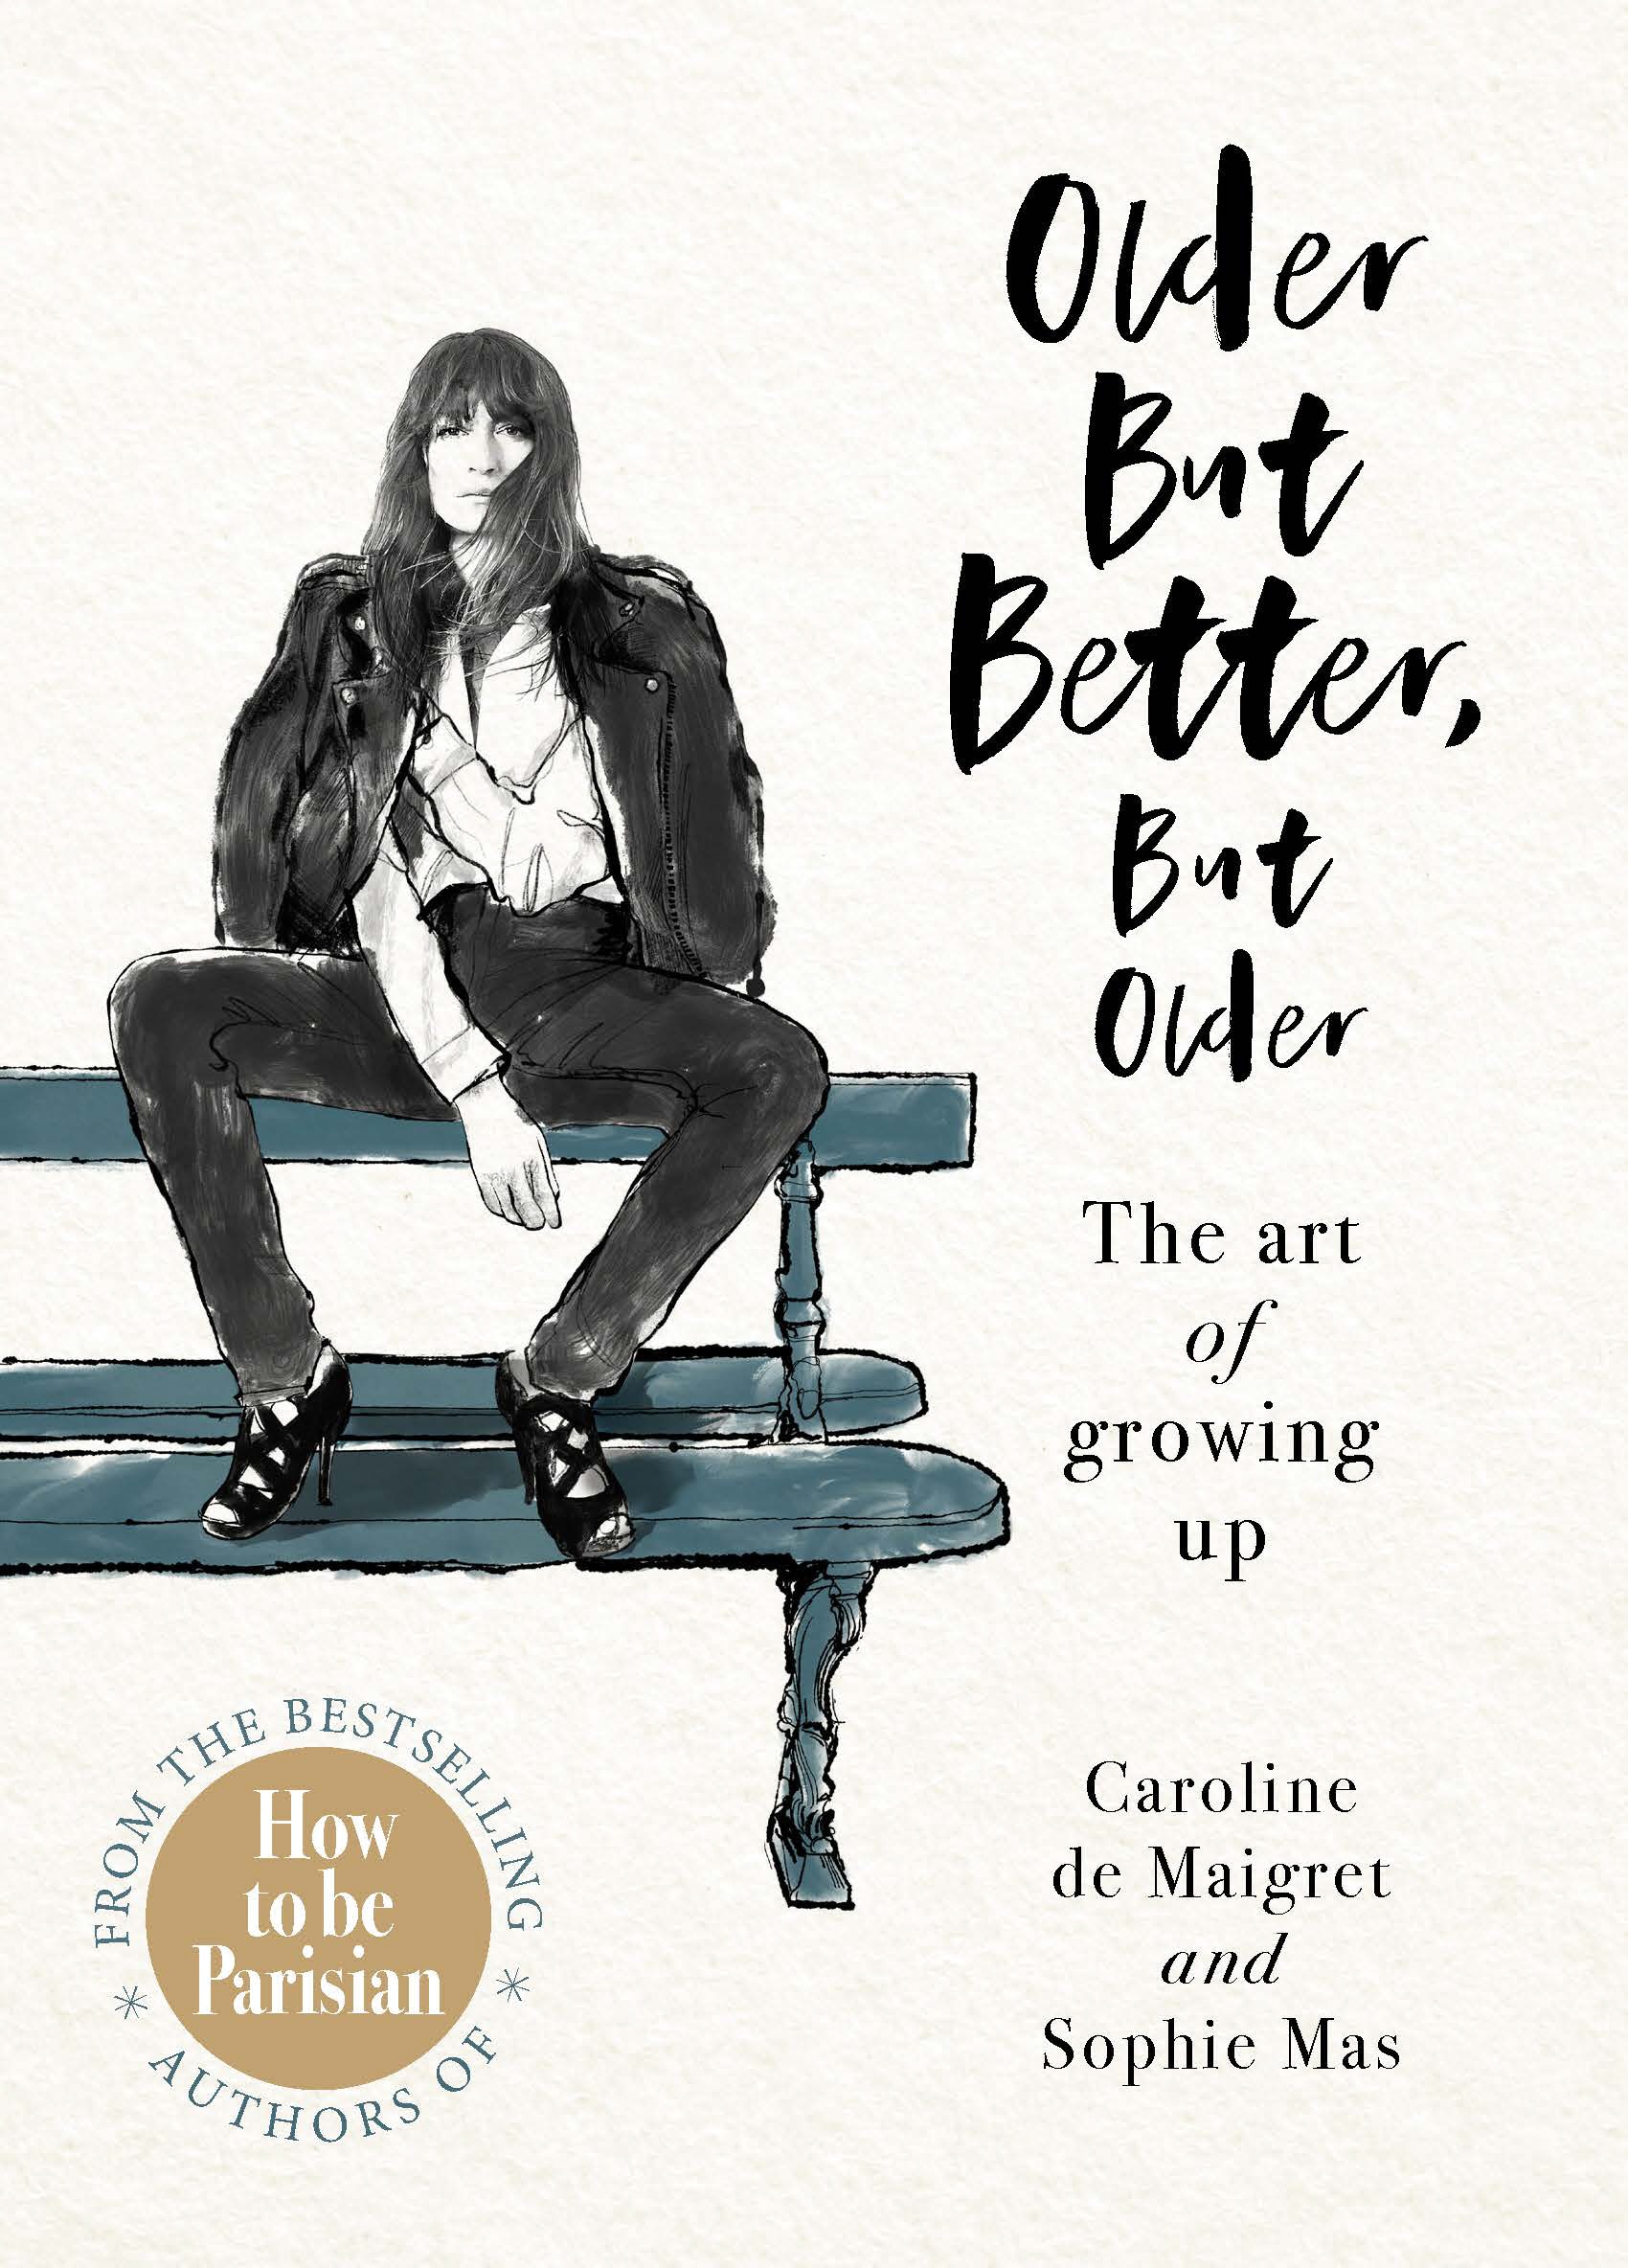 Book “Older but Better, but Older” by Caroline de Maigret, Sophie Mas — January 2, 2020